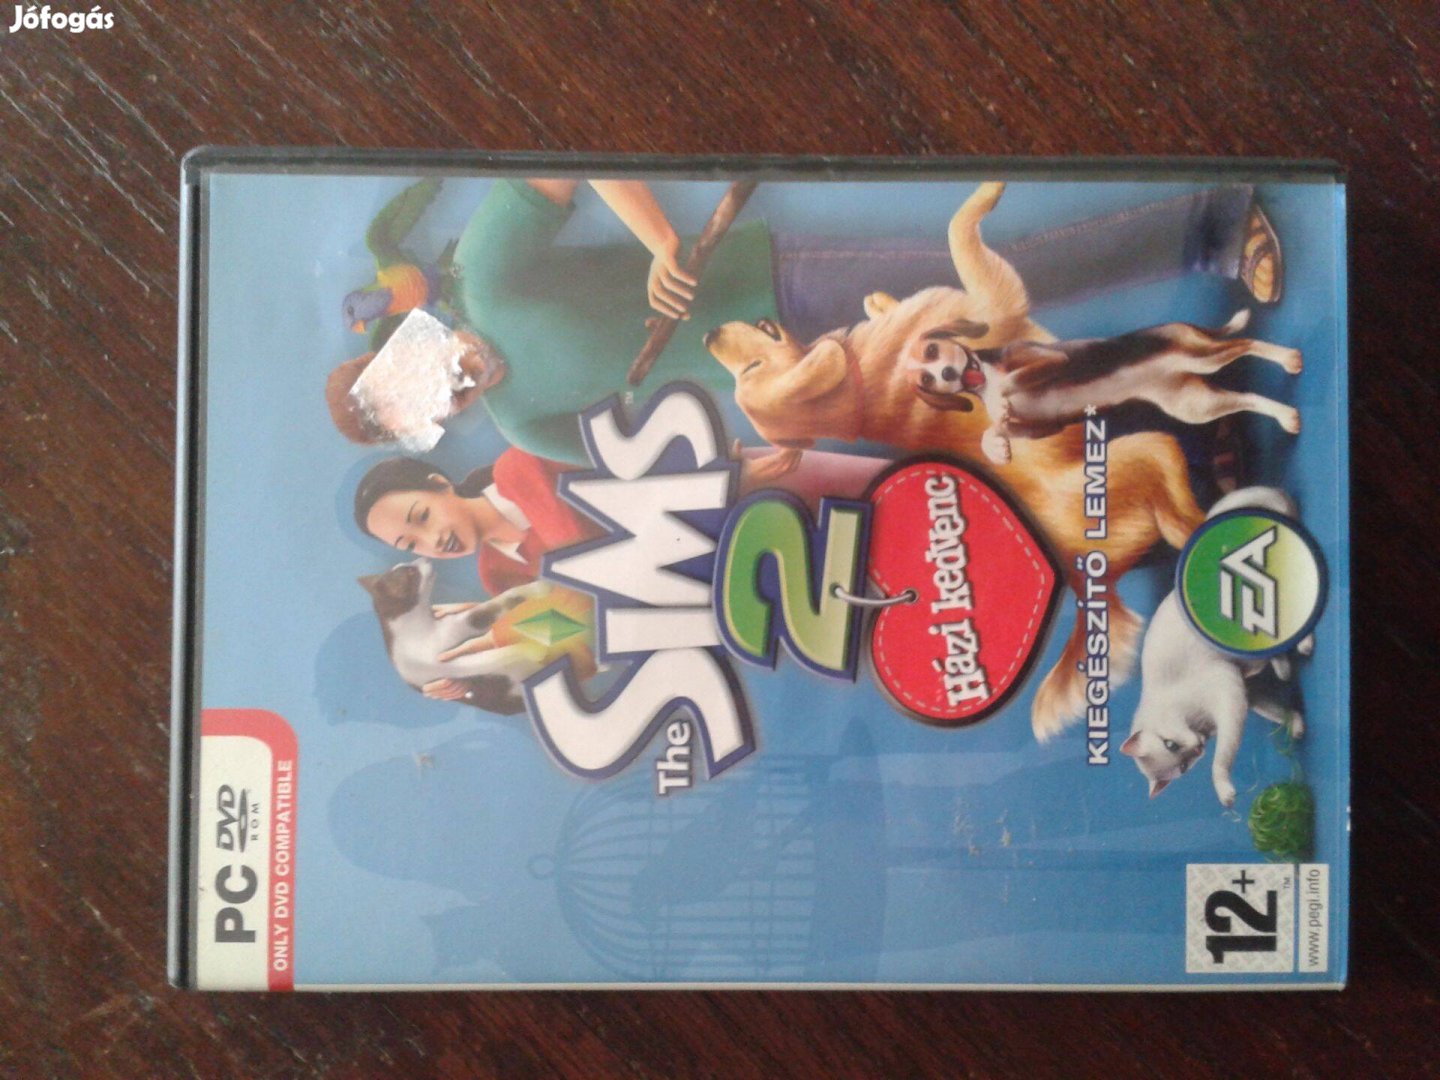 PC The Sims 2. Házi kedvenc